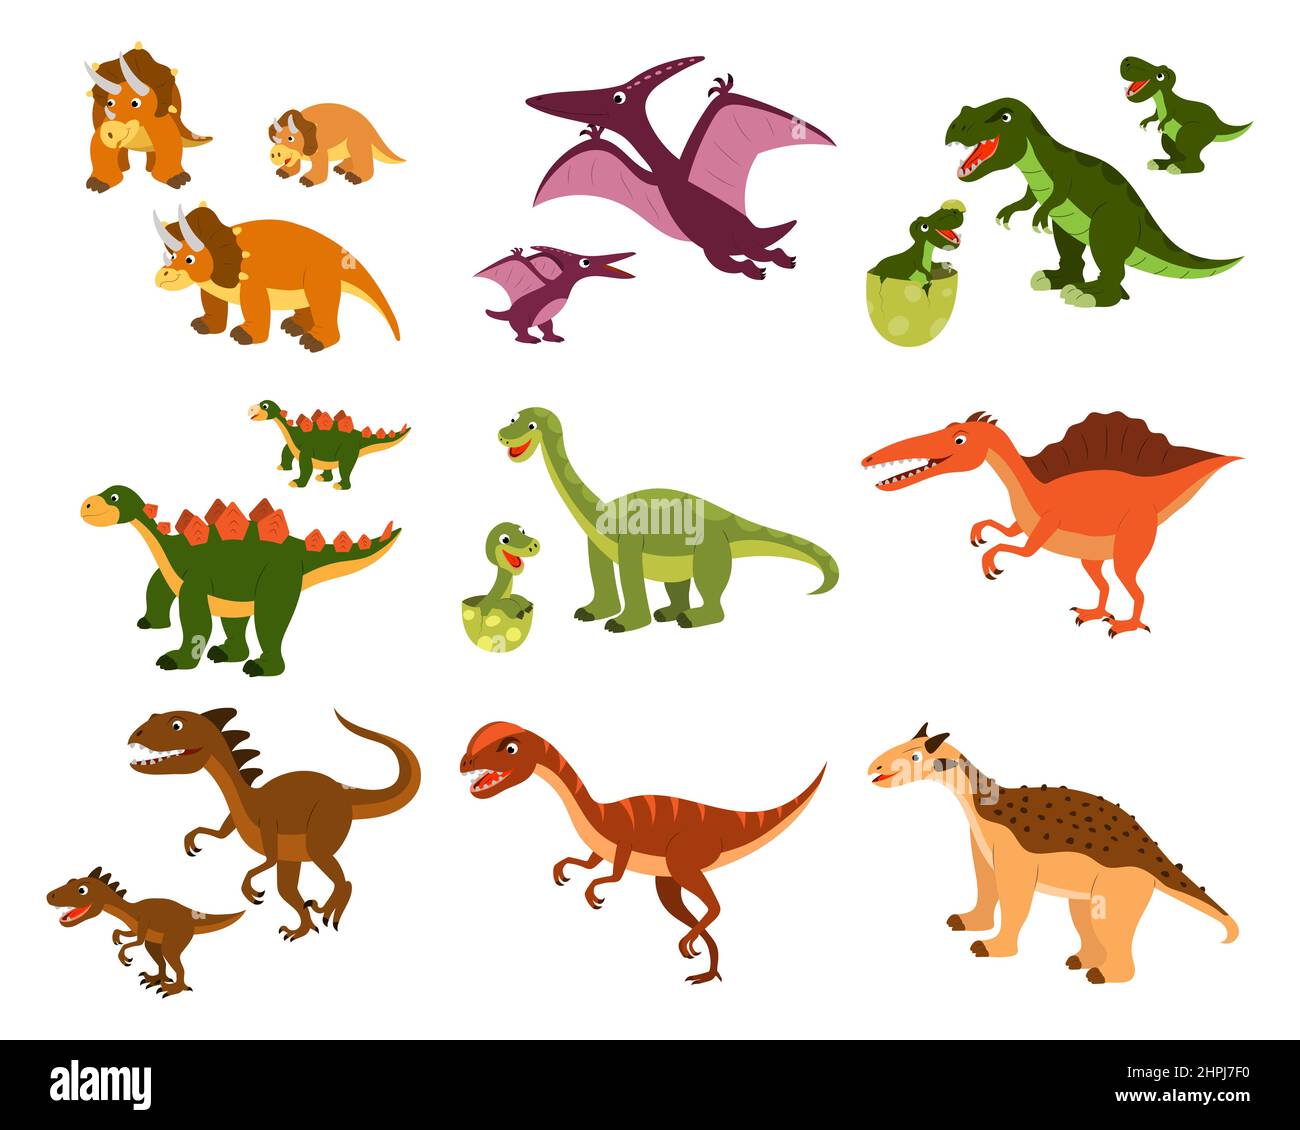 Eine Reihe von niedlichen Cartoon-Dinosaurier und ihre Kinder. vektor isoliert auf einem weißen Hintergrund. Stock Vektor